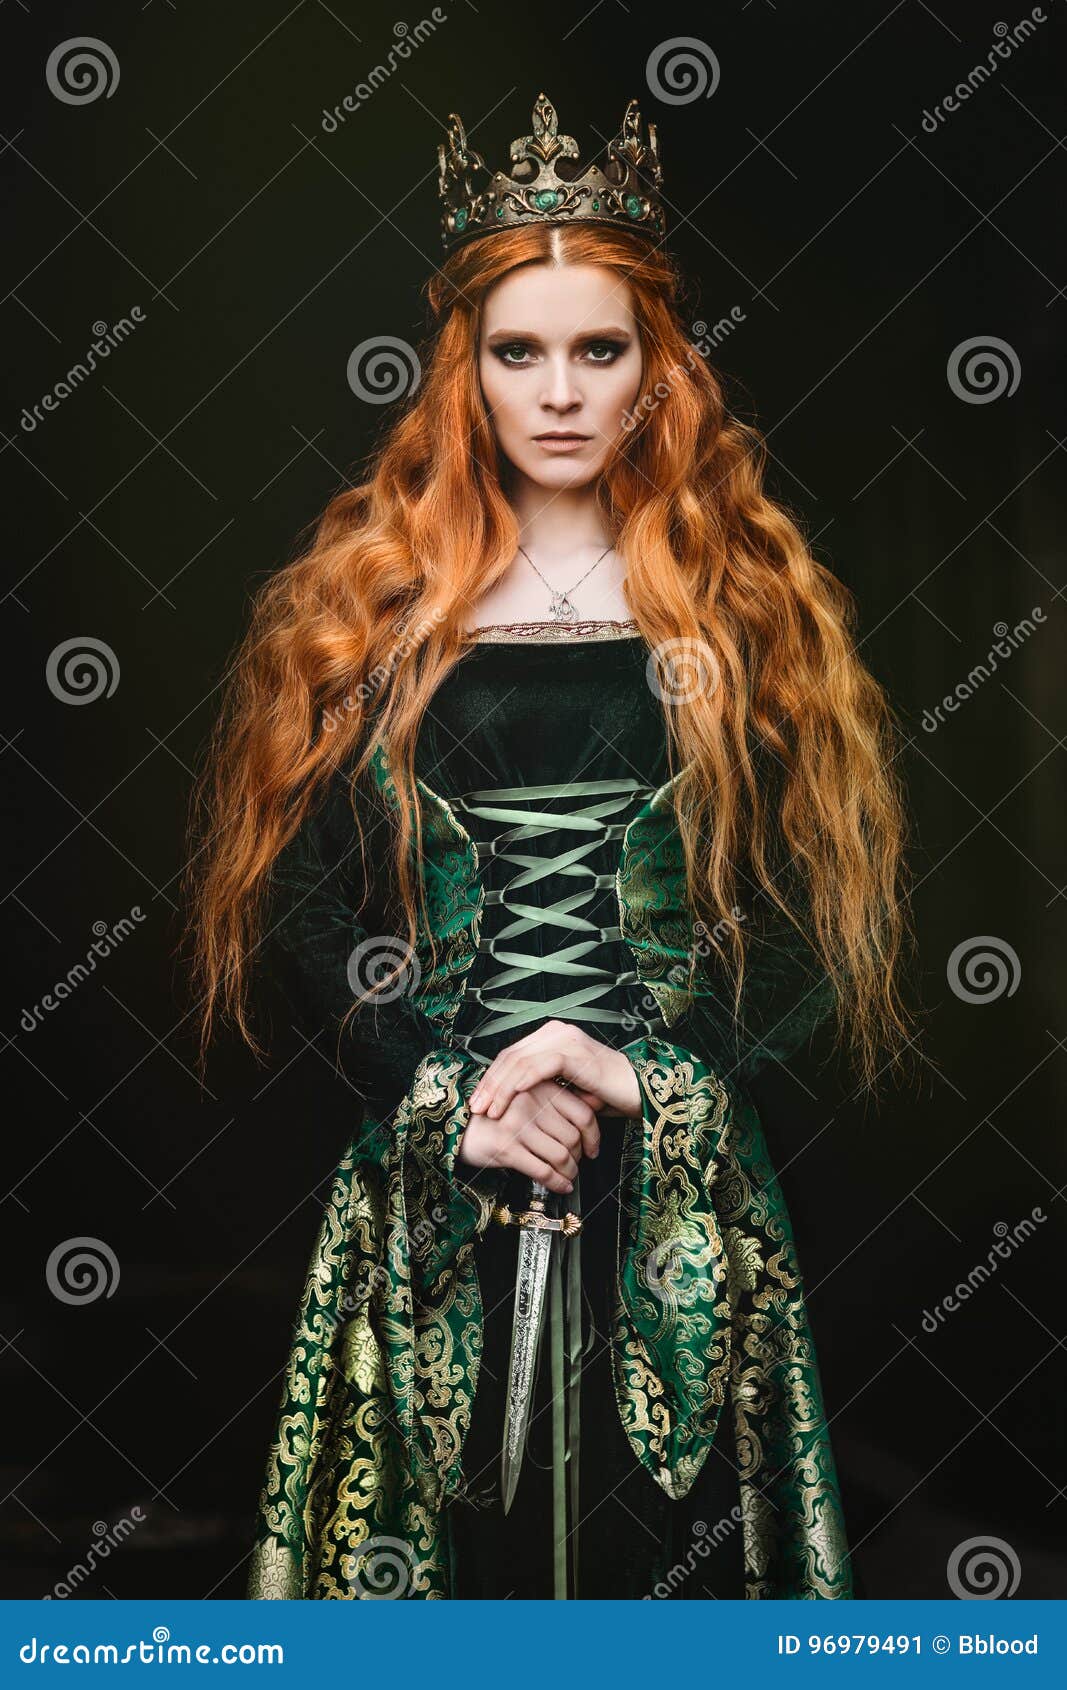 HEMAD/Billy Held Medieval Vestido naturbeige con escapulario Verde de algodón para Mujer Vestido de S XL 